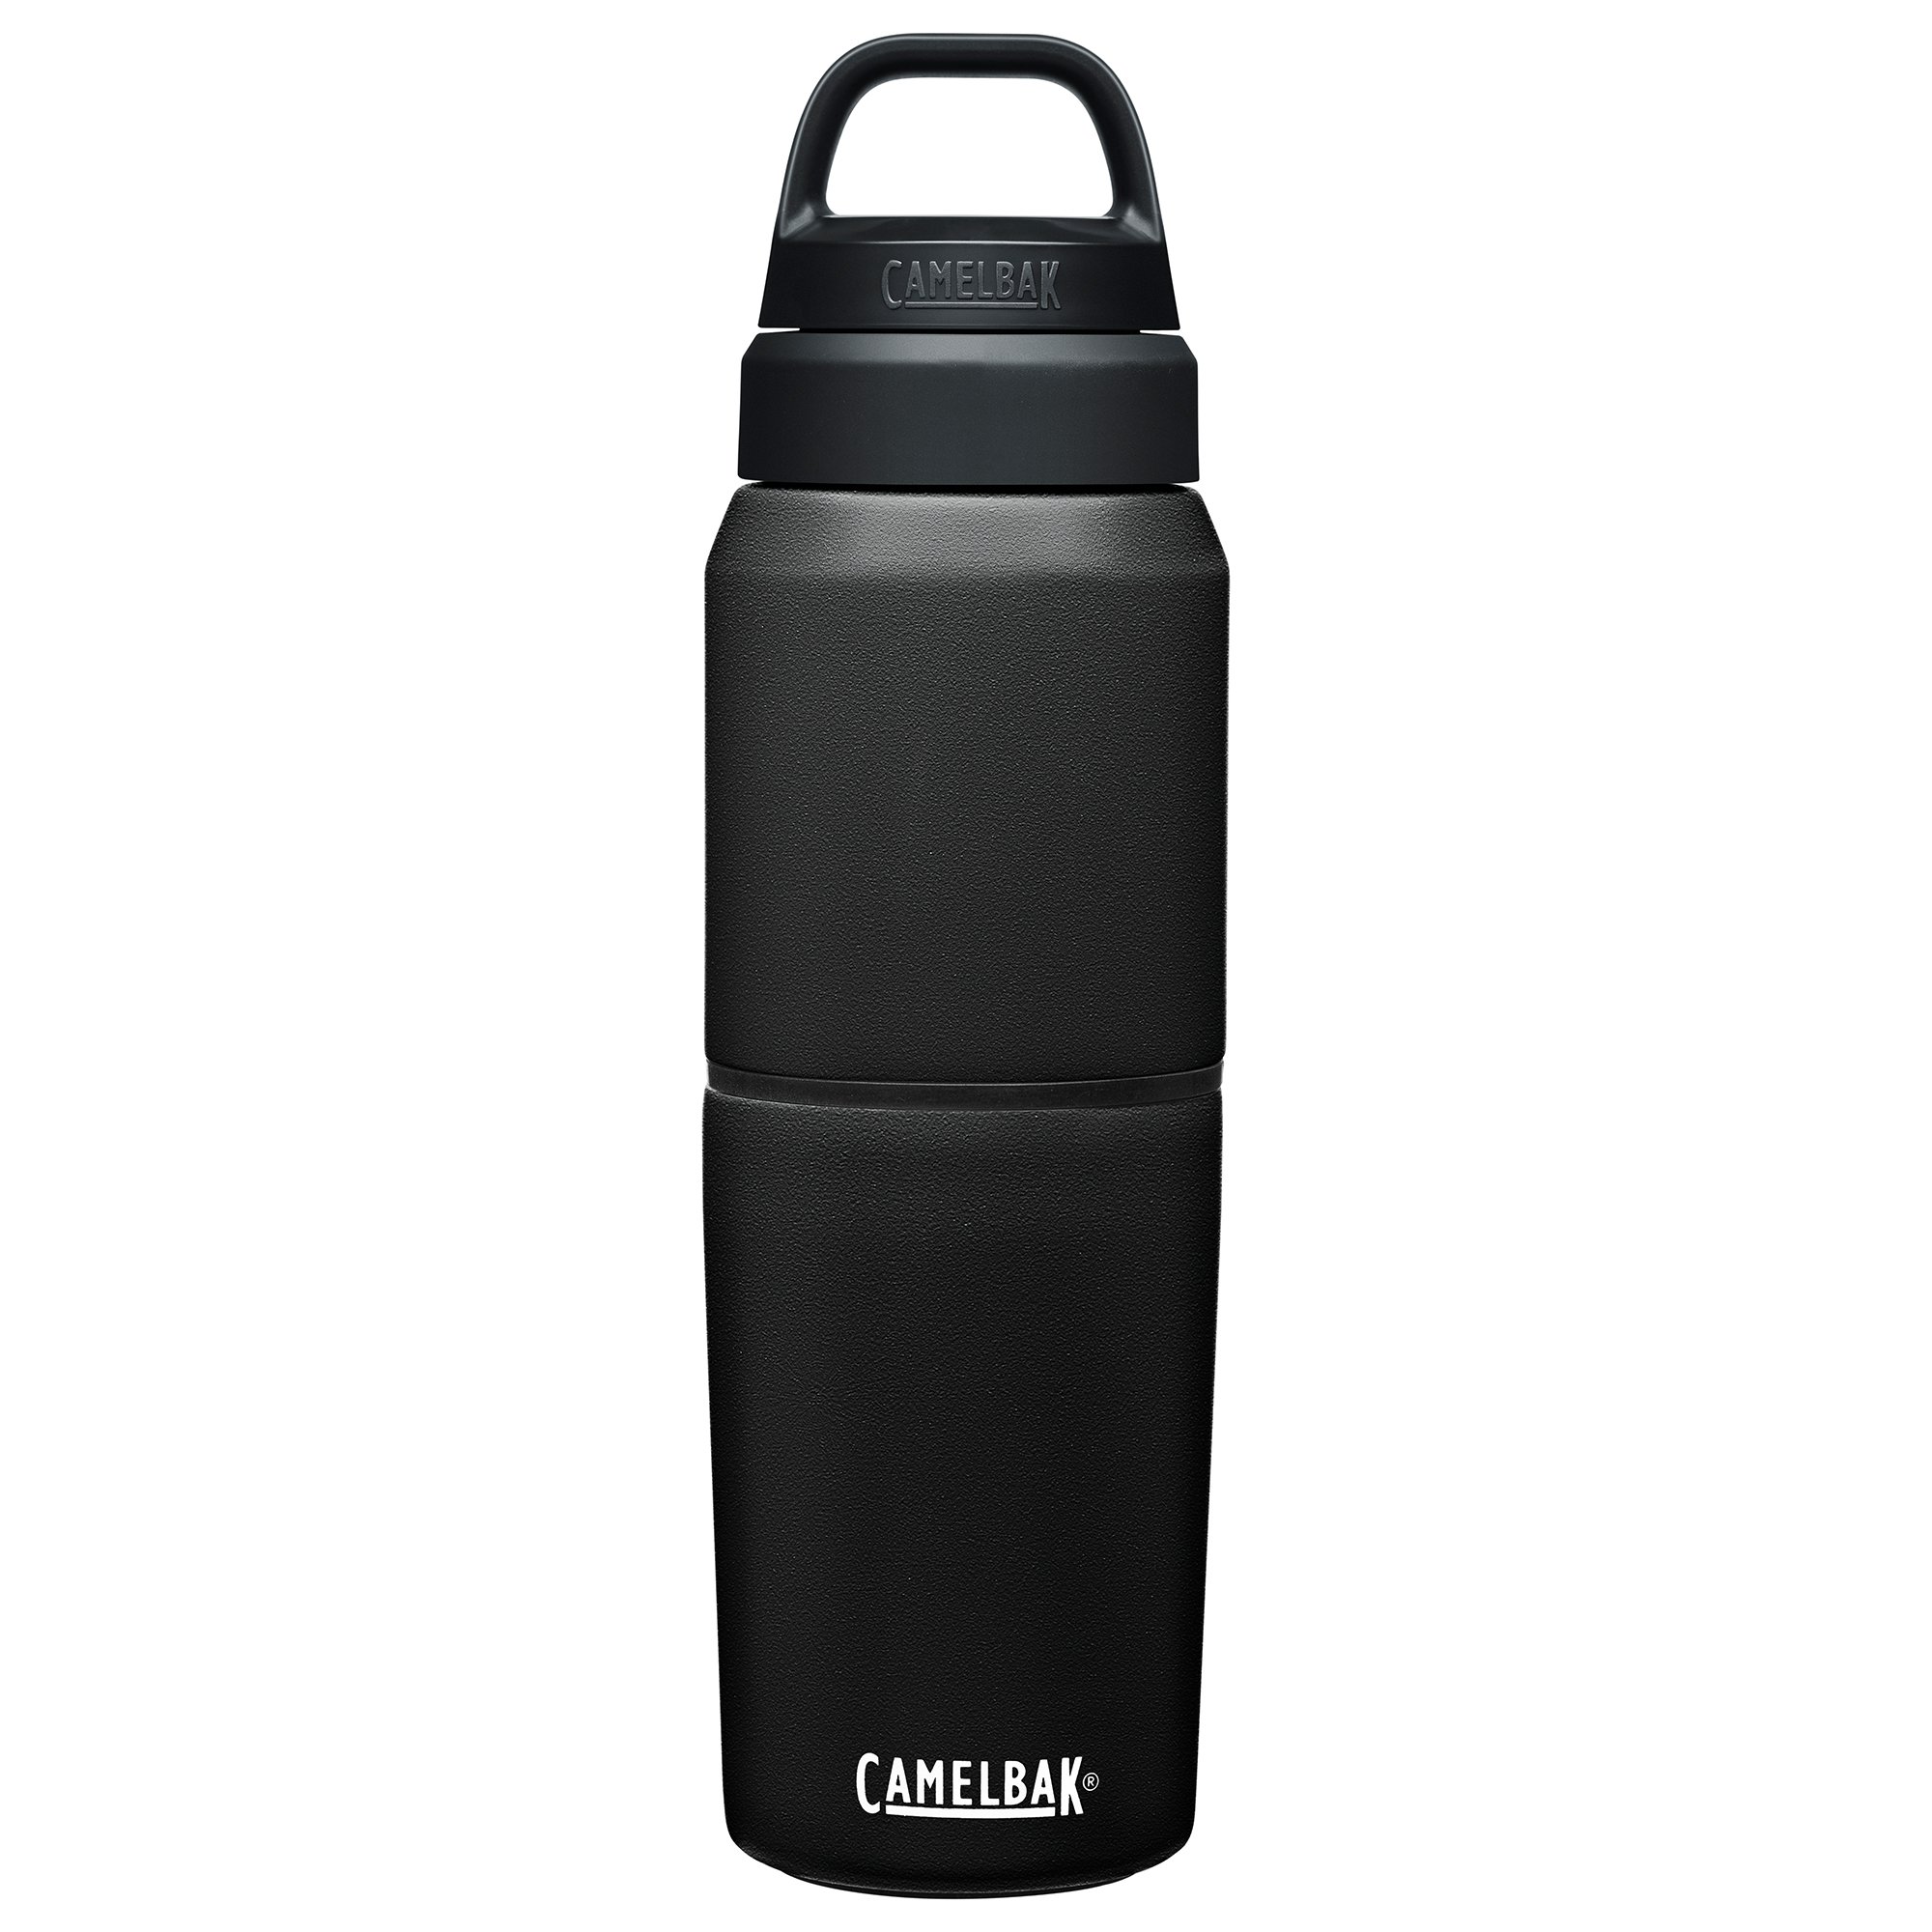 Camelbak MultiBev 0.5/0.35 liter black